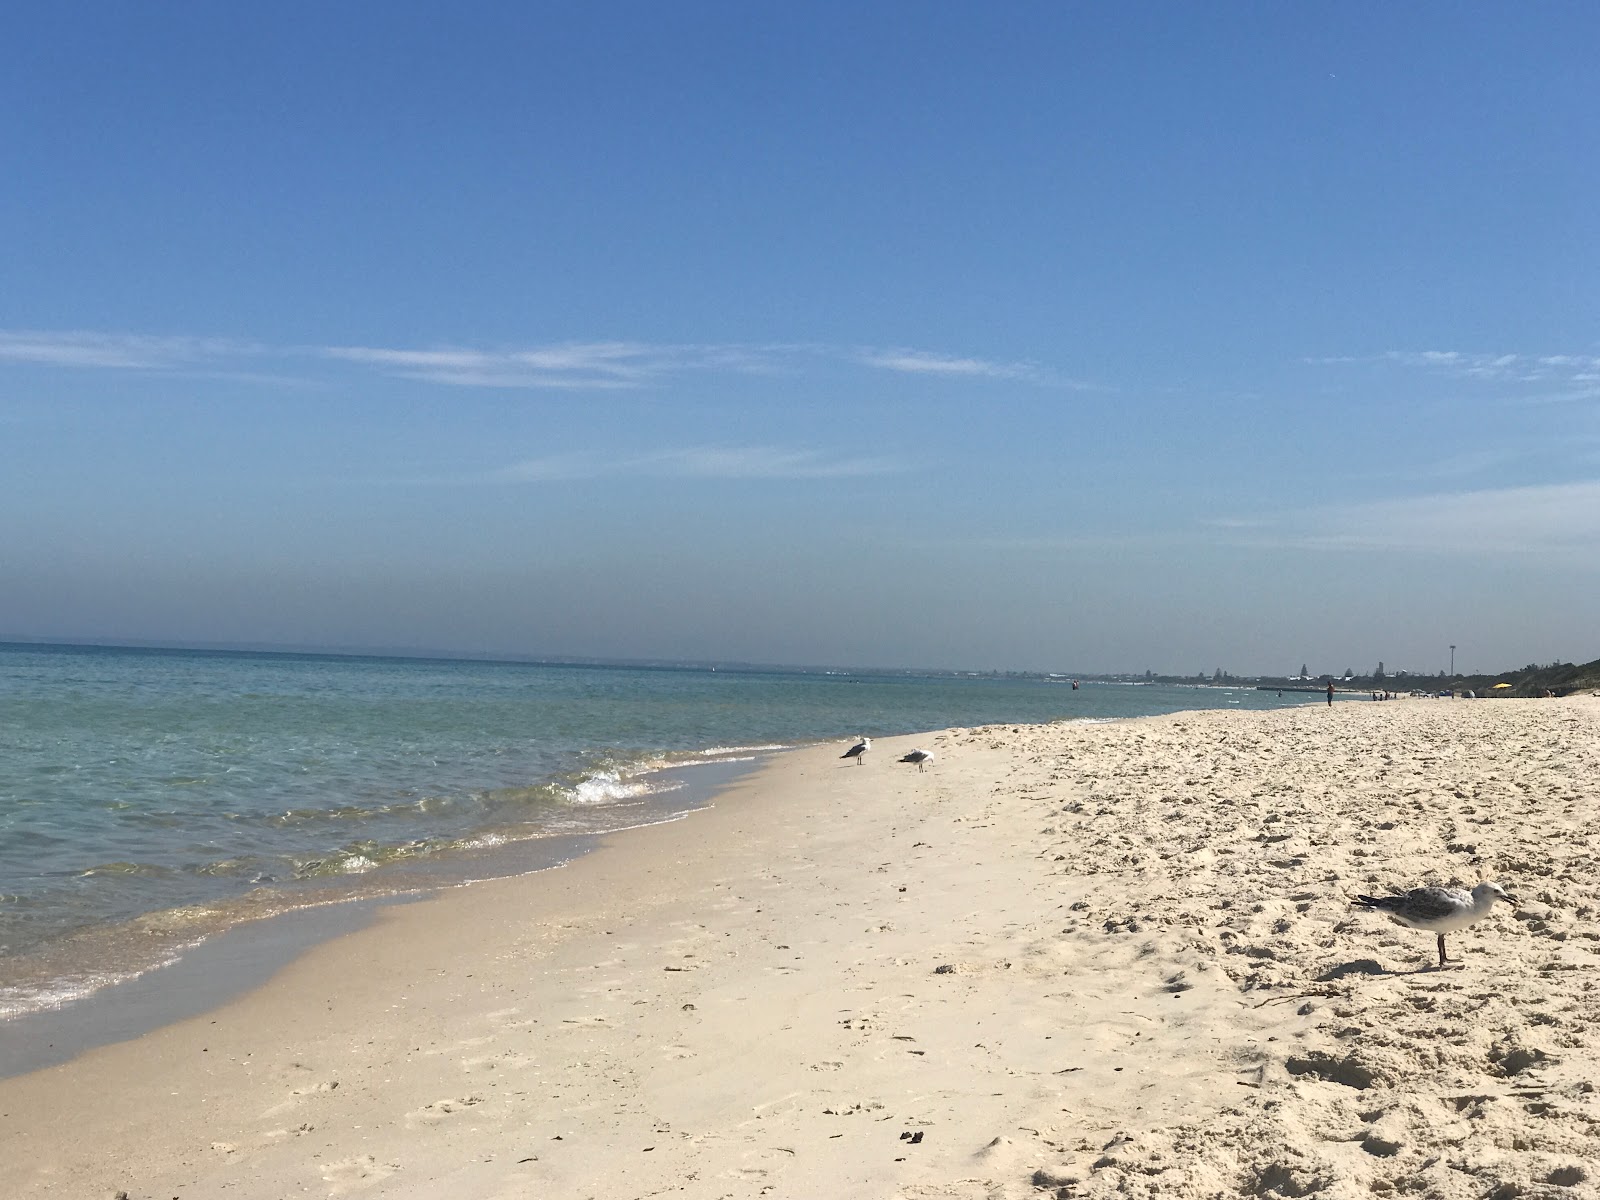 Fotografie cu Seaford Beach - locul popular printre cunoscătorii de relaxare